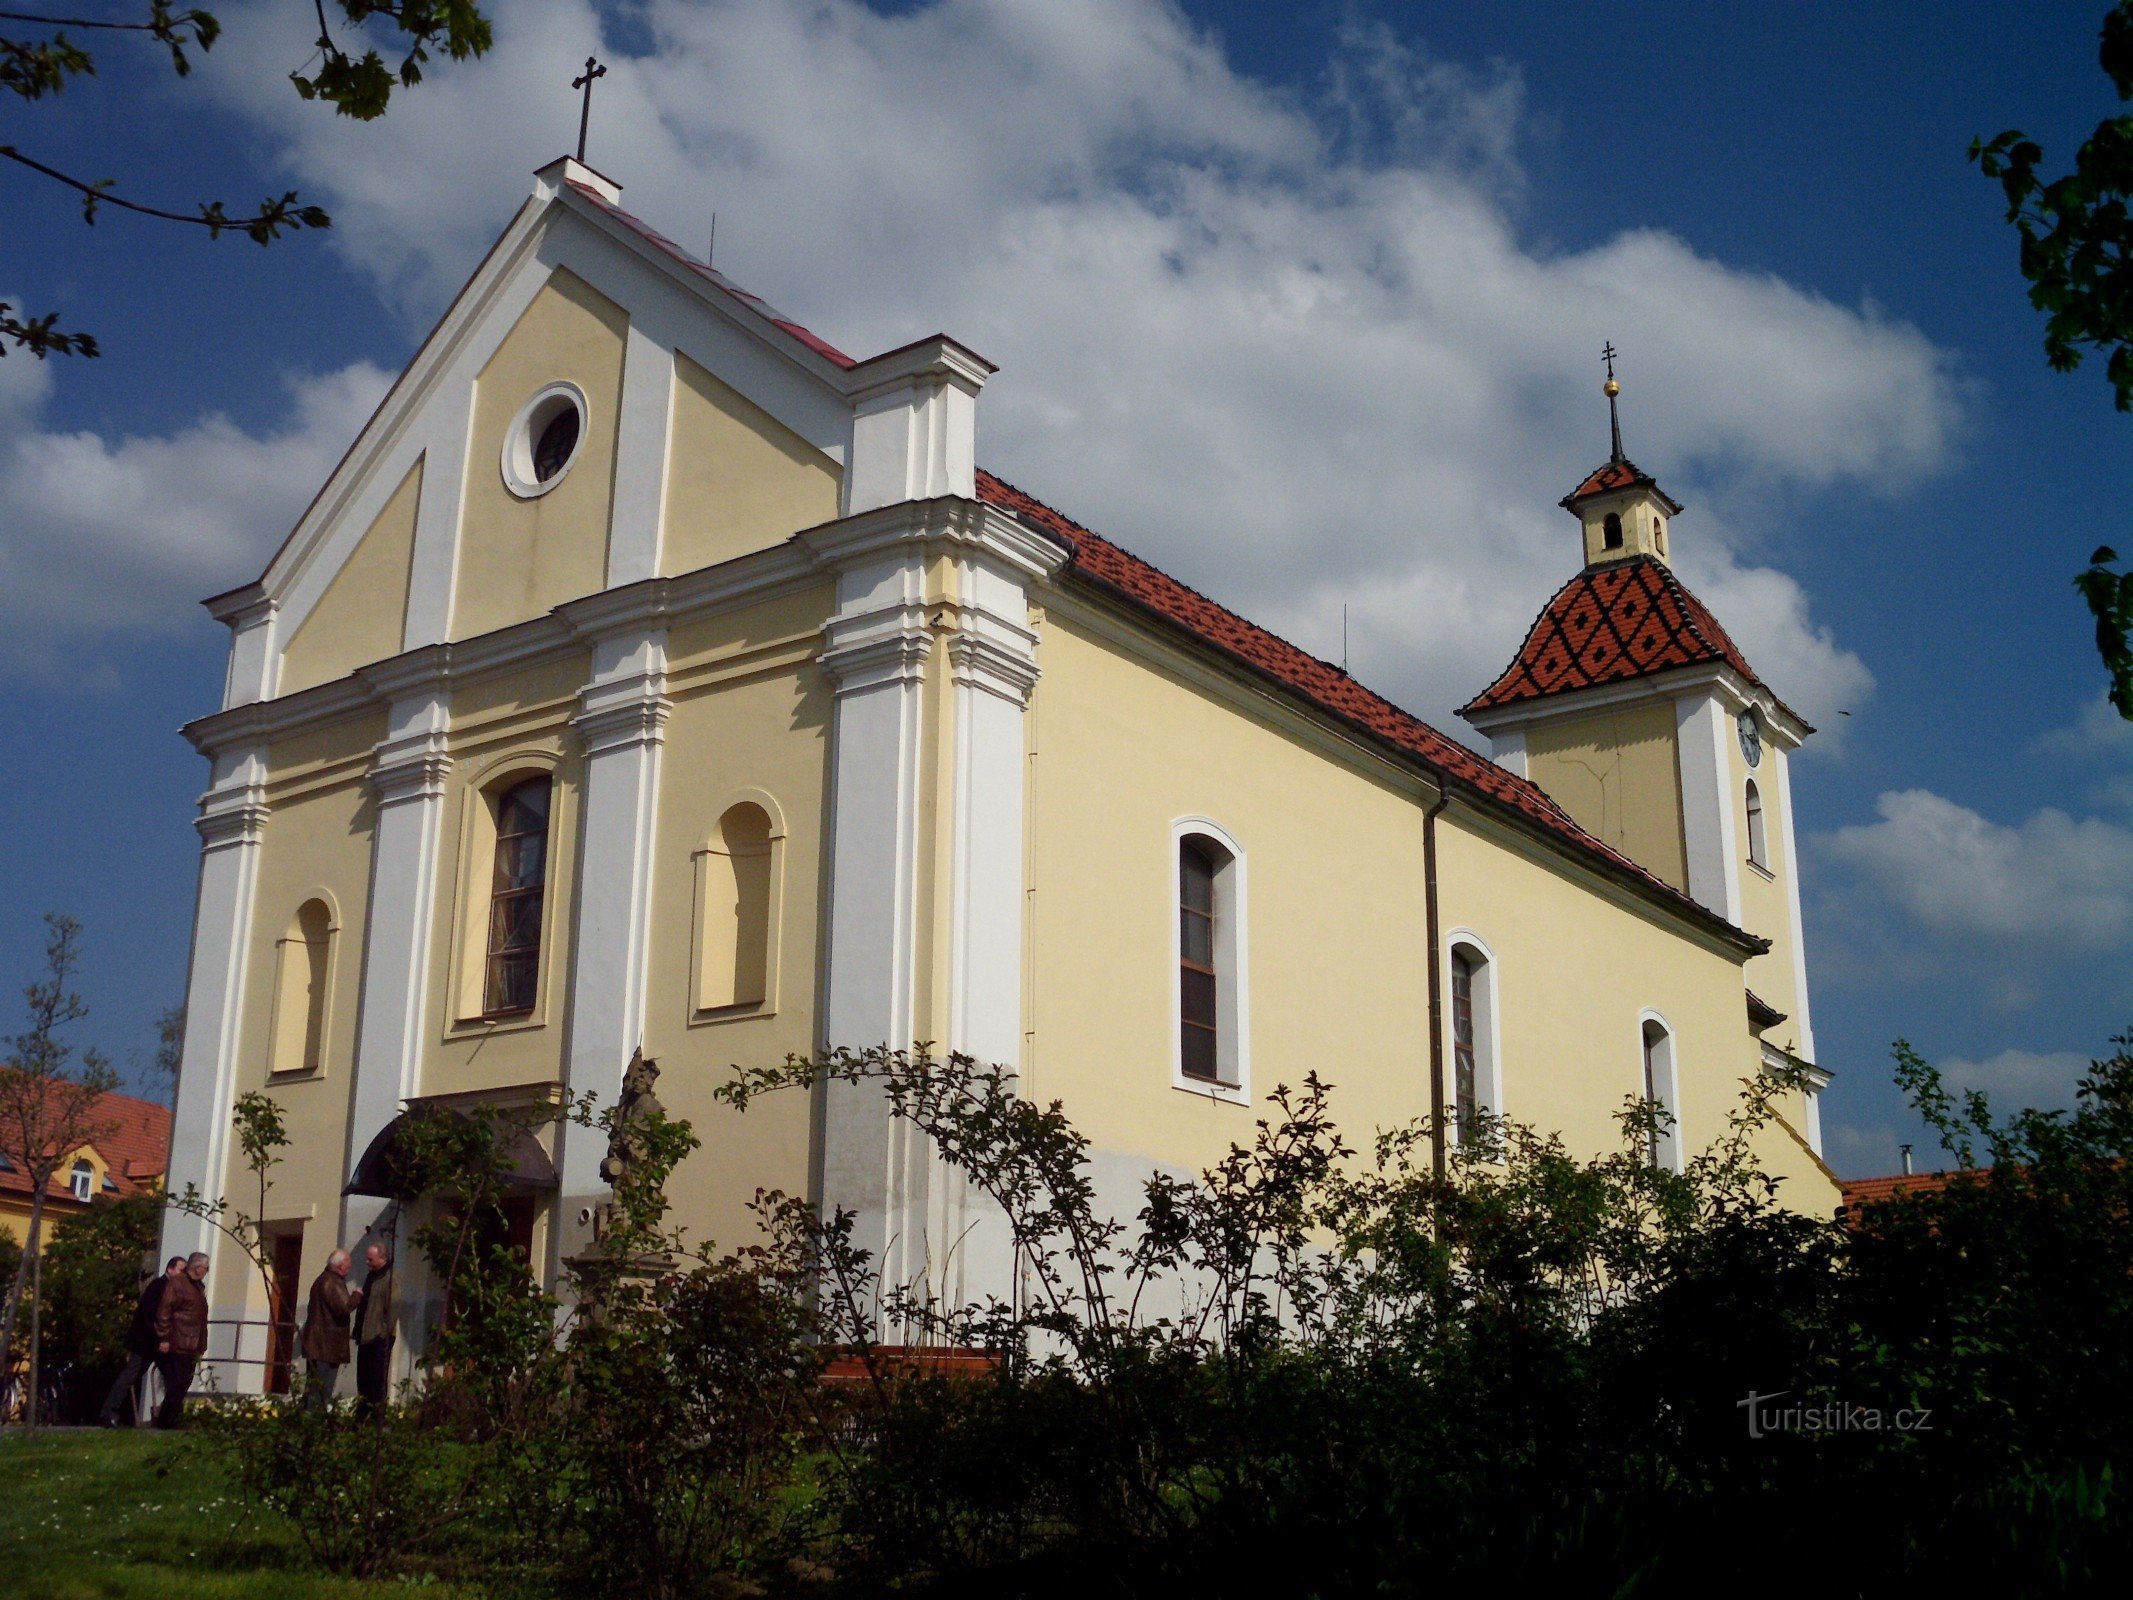 Kunovice (em U. Hradiště) - igreja de St. Pedro e Paulo